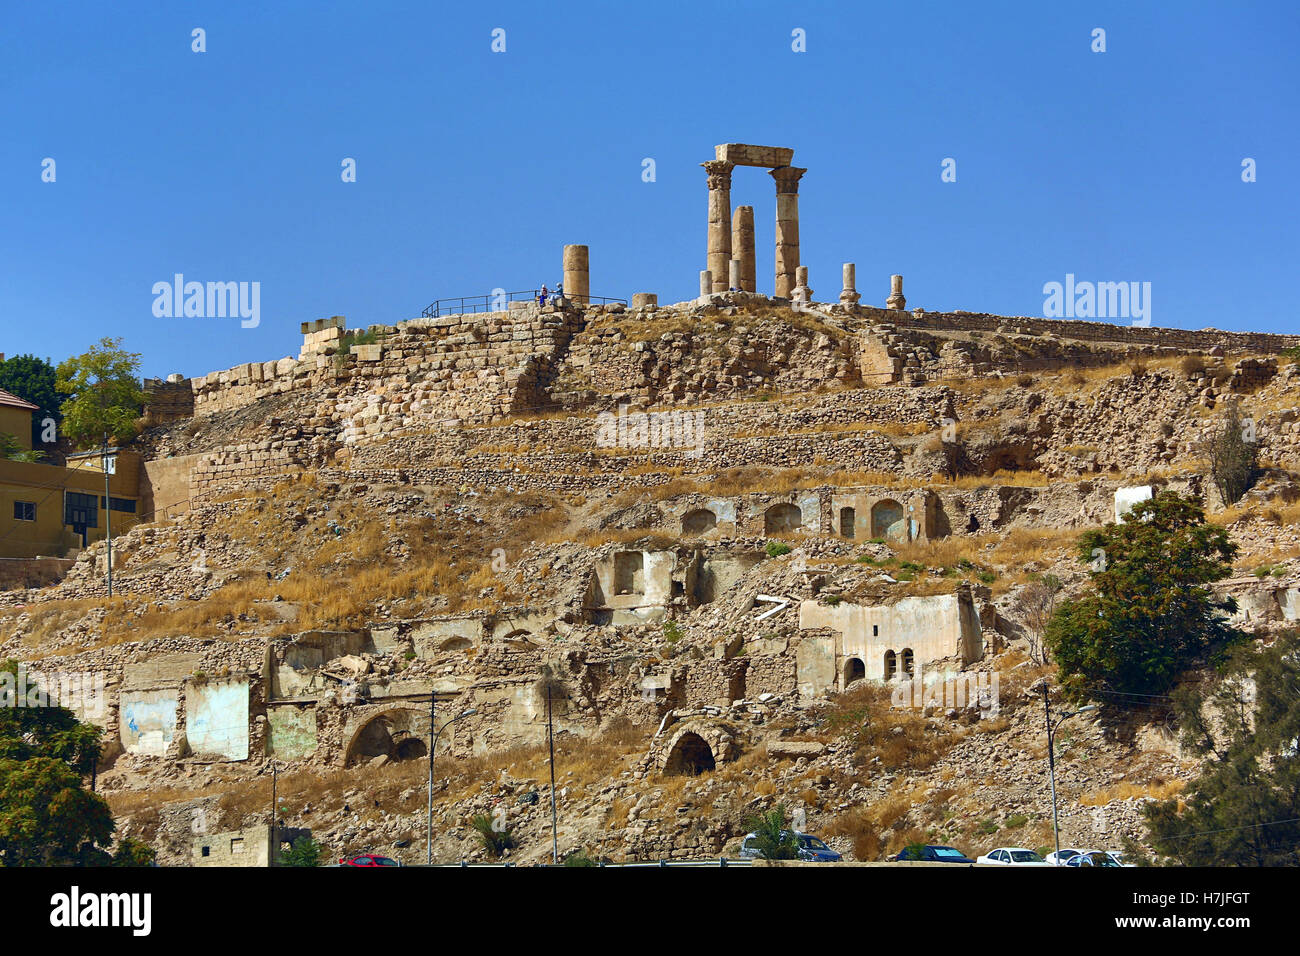 The Temple of Hercules in the Amman Citadel, Jabal Al-Qala, Amman, Jordan Stock Photo